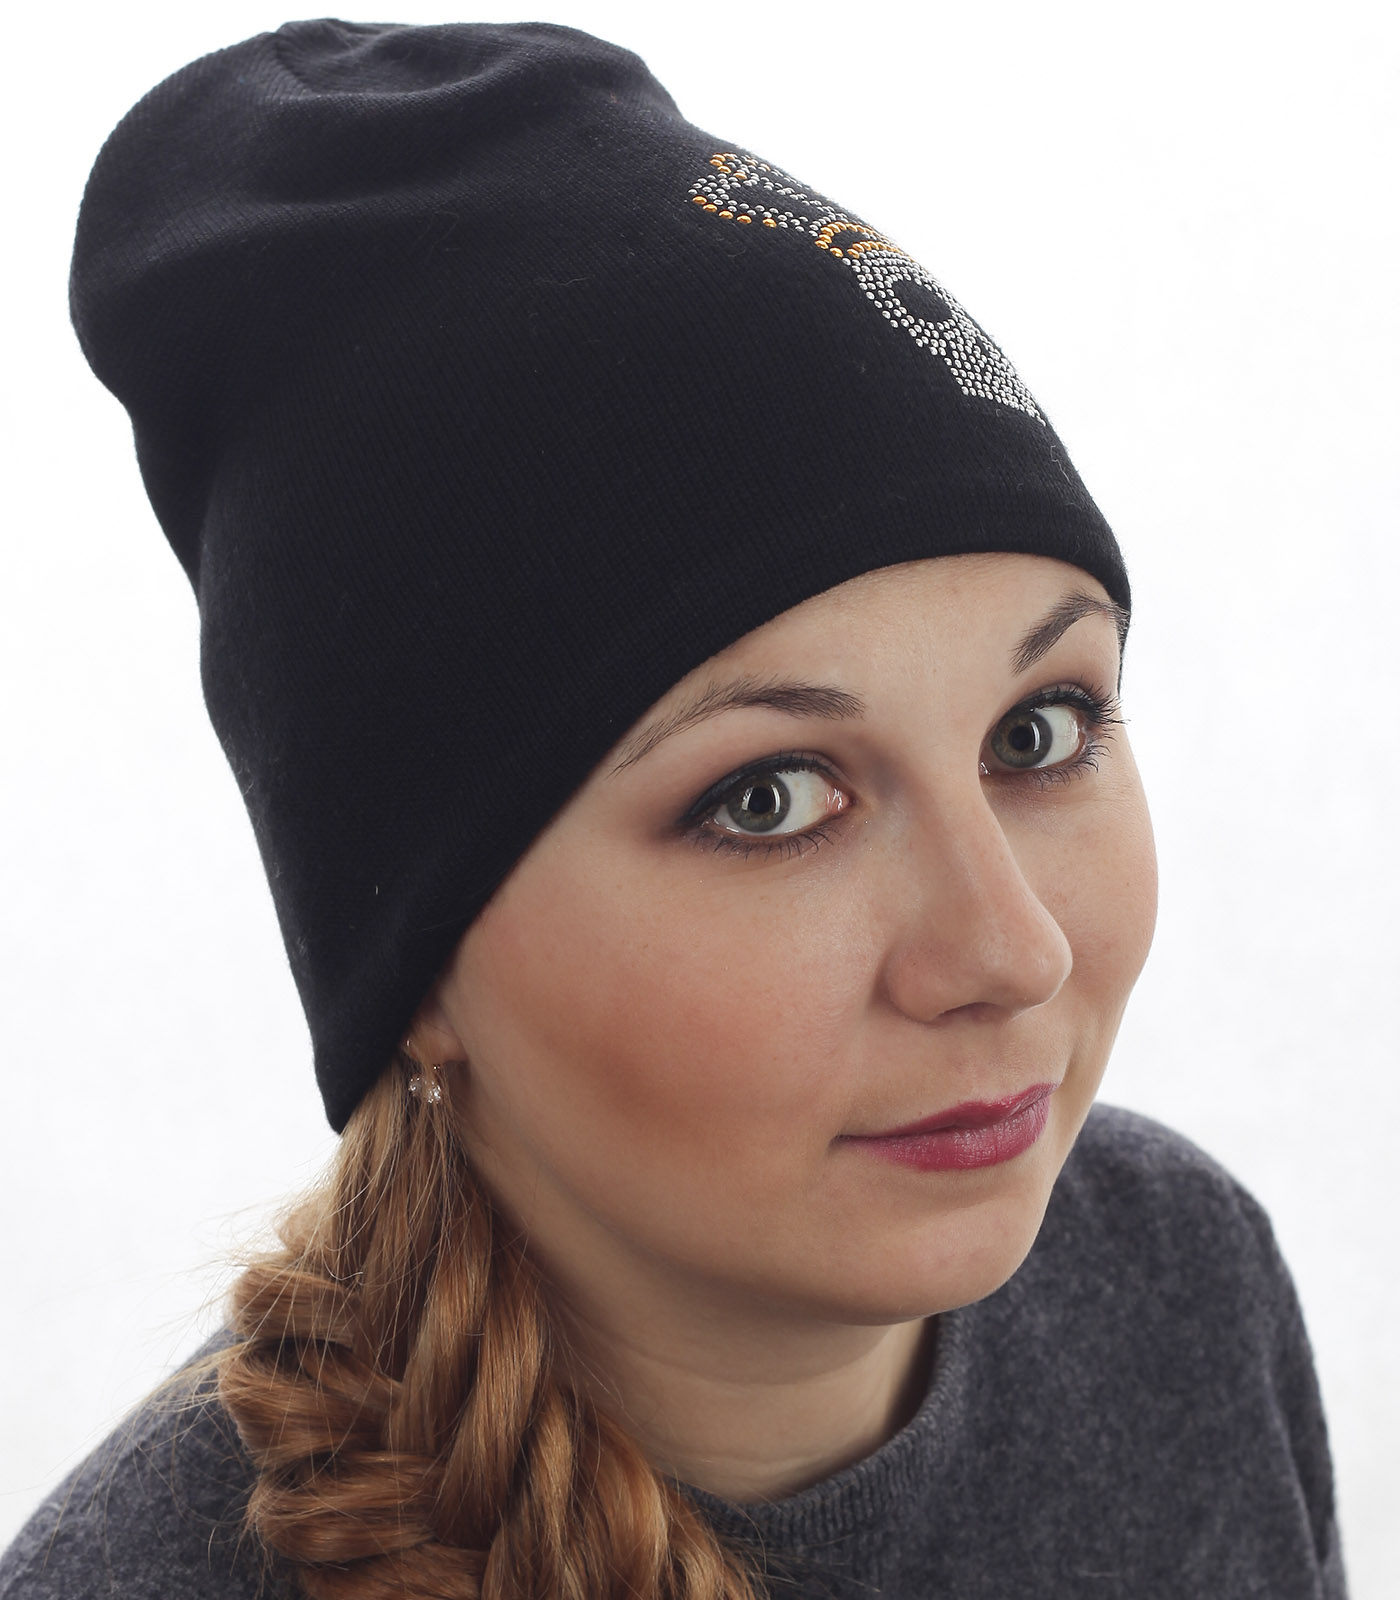 Купить вязаную женскую шапку черного цвета в интернет магазине